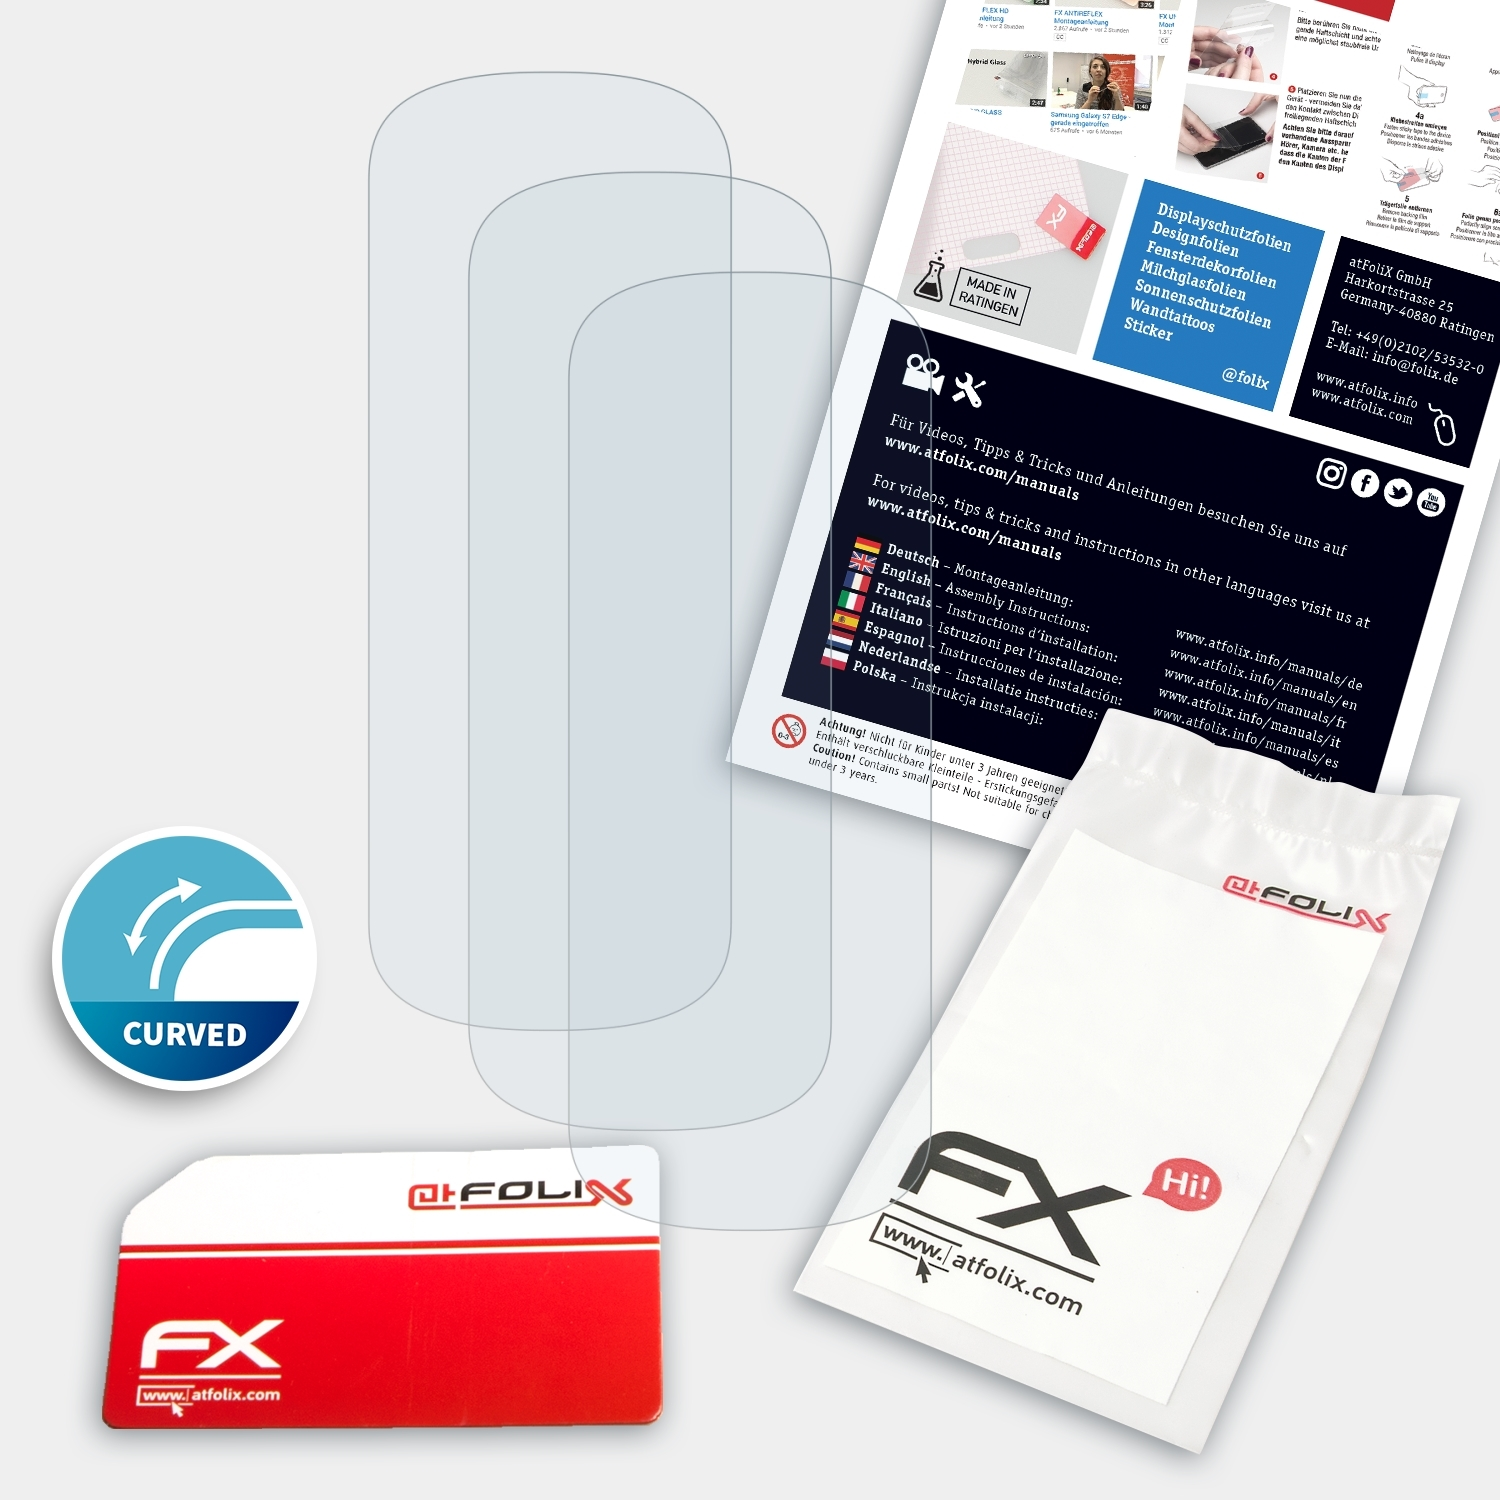 ATFOLIX 3x FX-ActiFleX Displayschutz(für Galaxy Samsung Fit2)